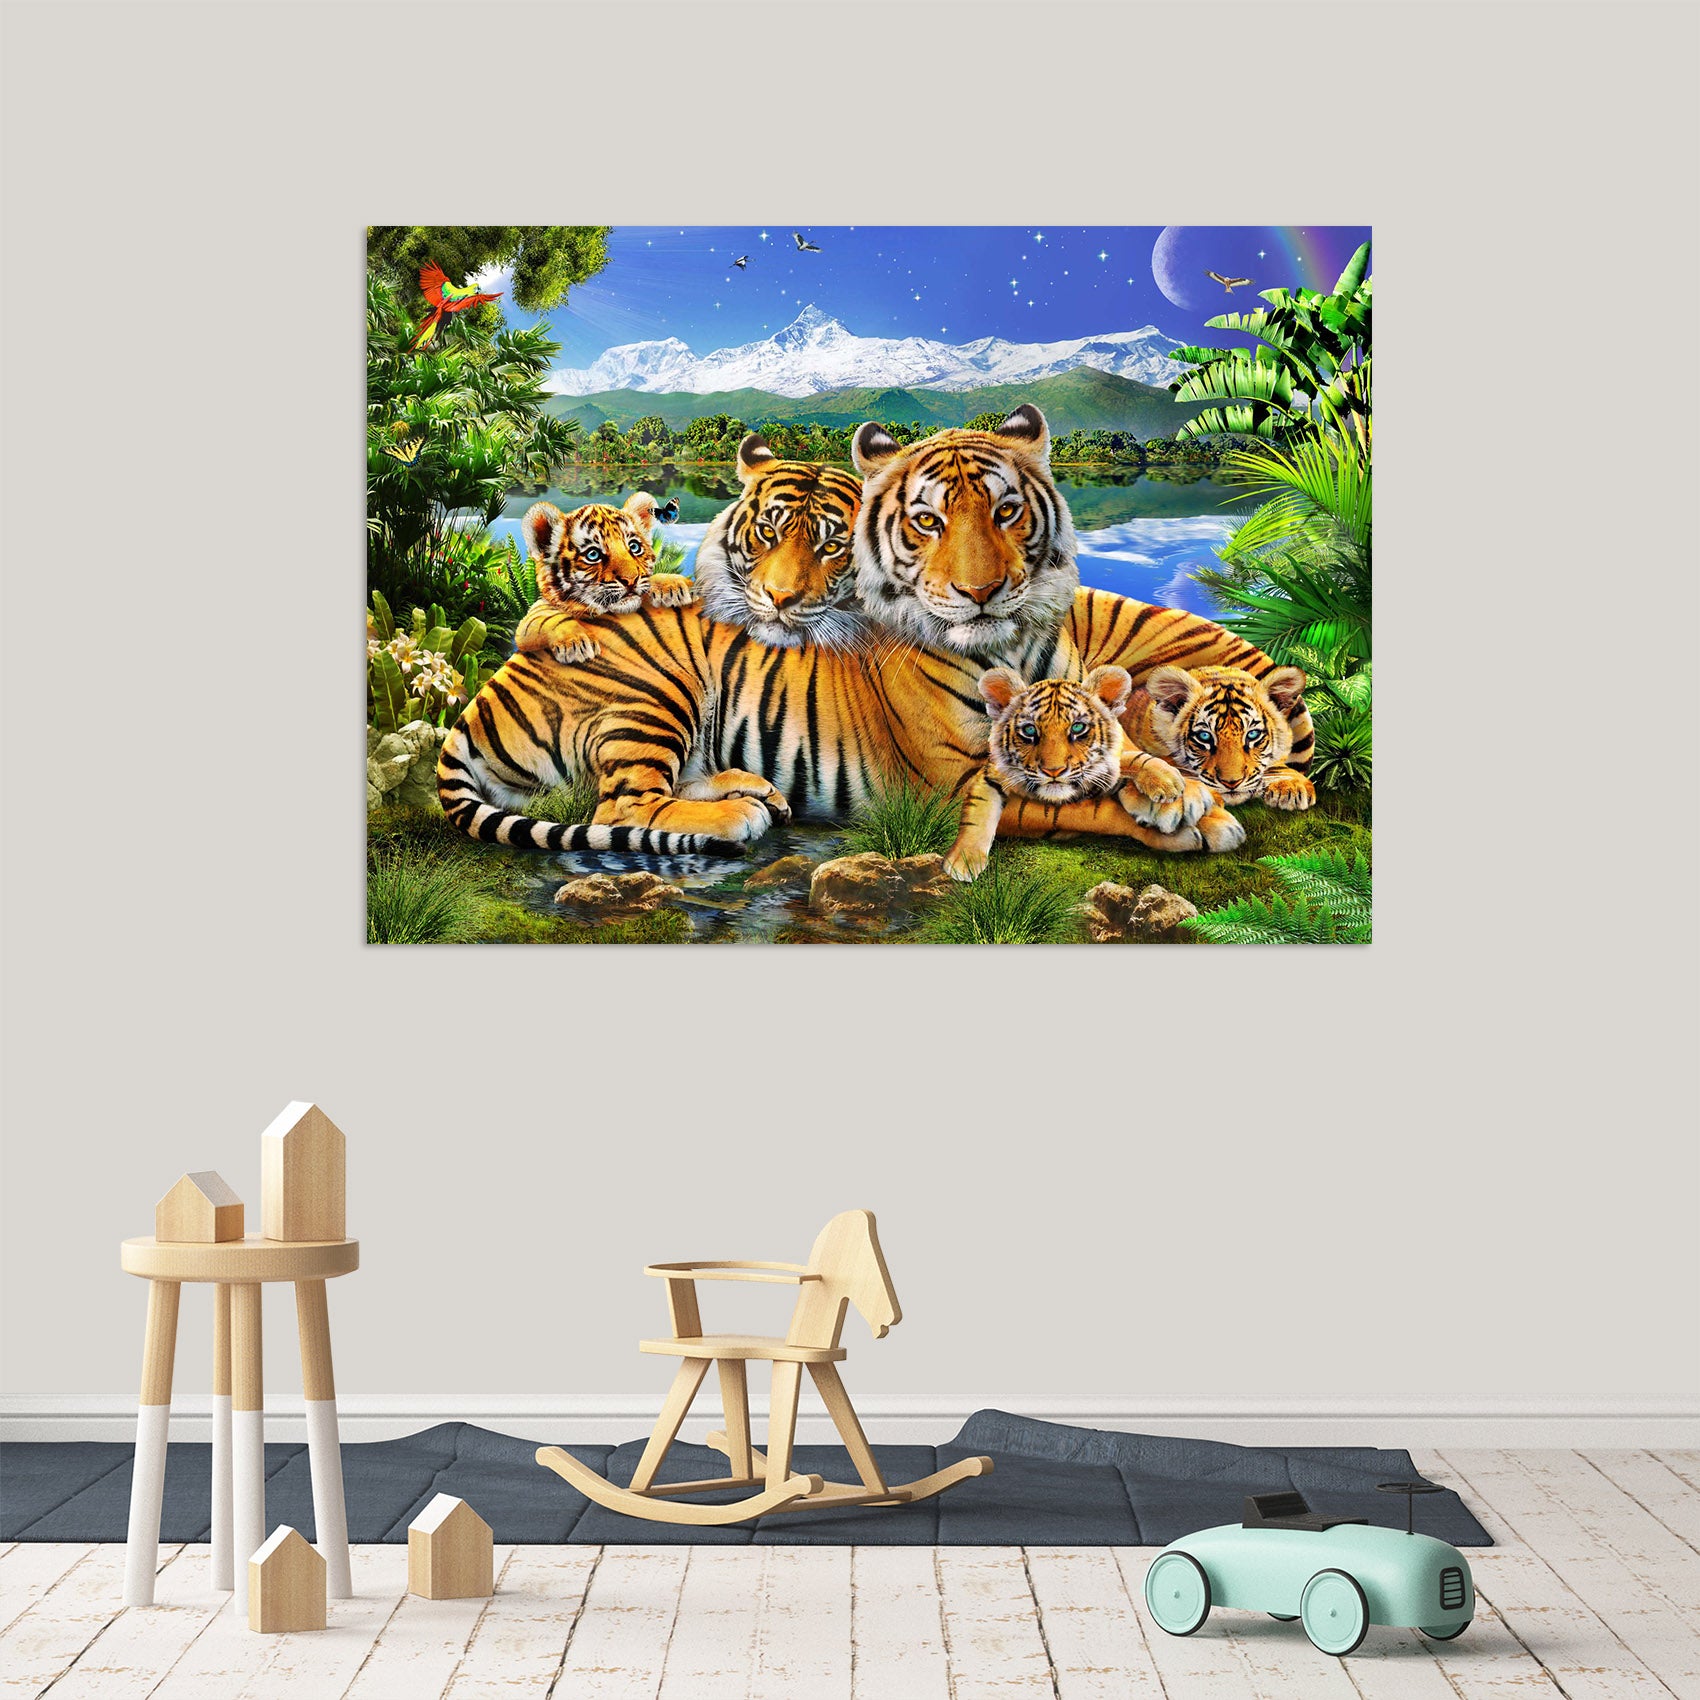 3D Loving Tigers 012 Adrian Chesterman Wall Sticker